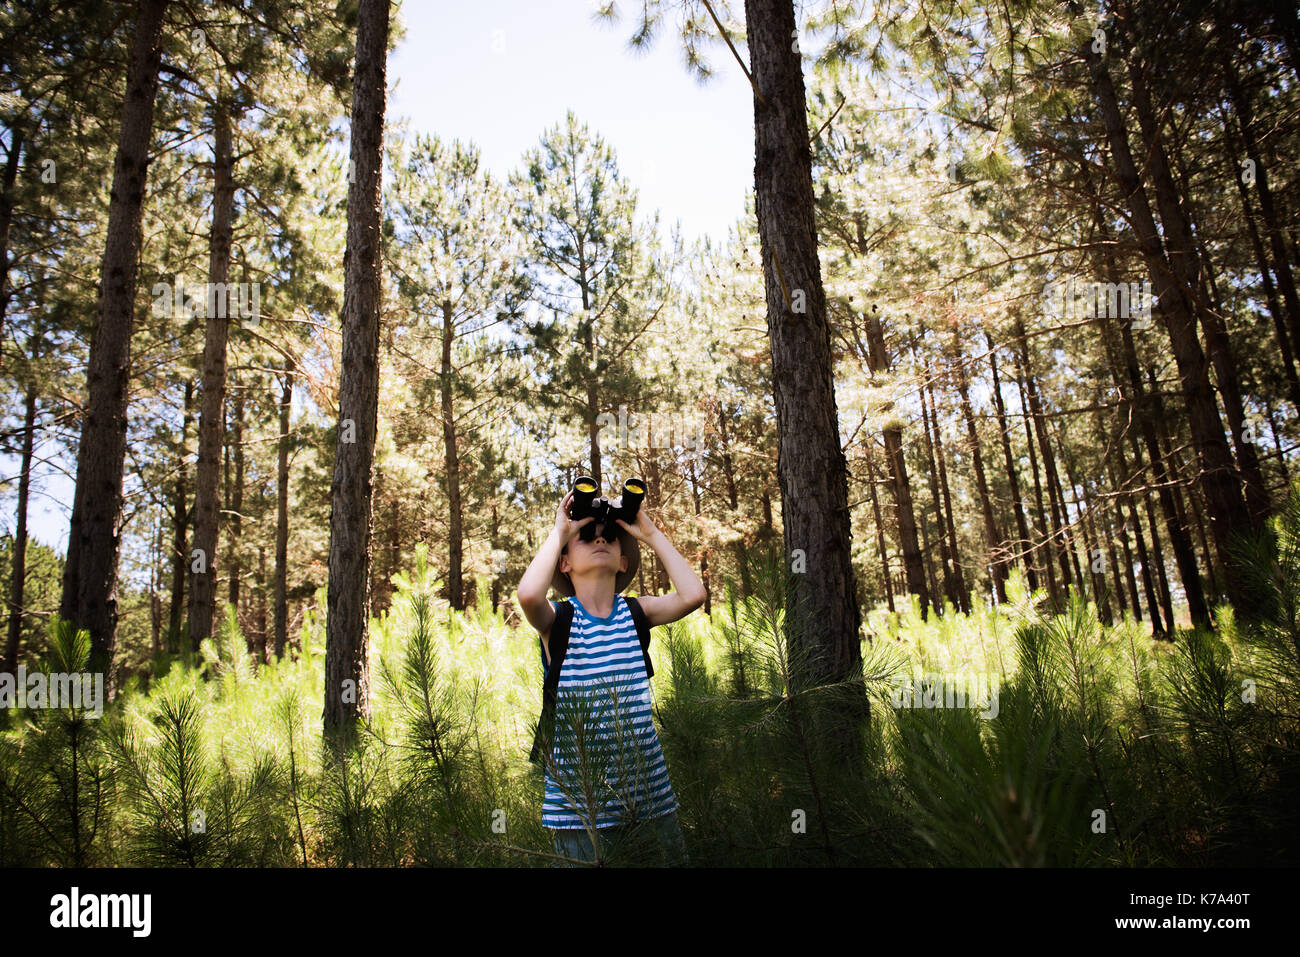 Boy looking through binoculars in woods Banque D'Images